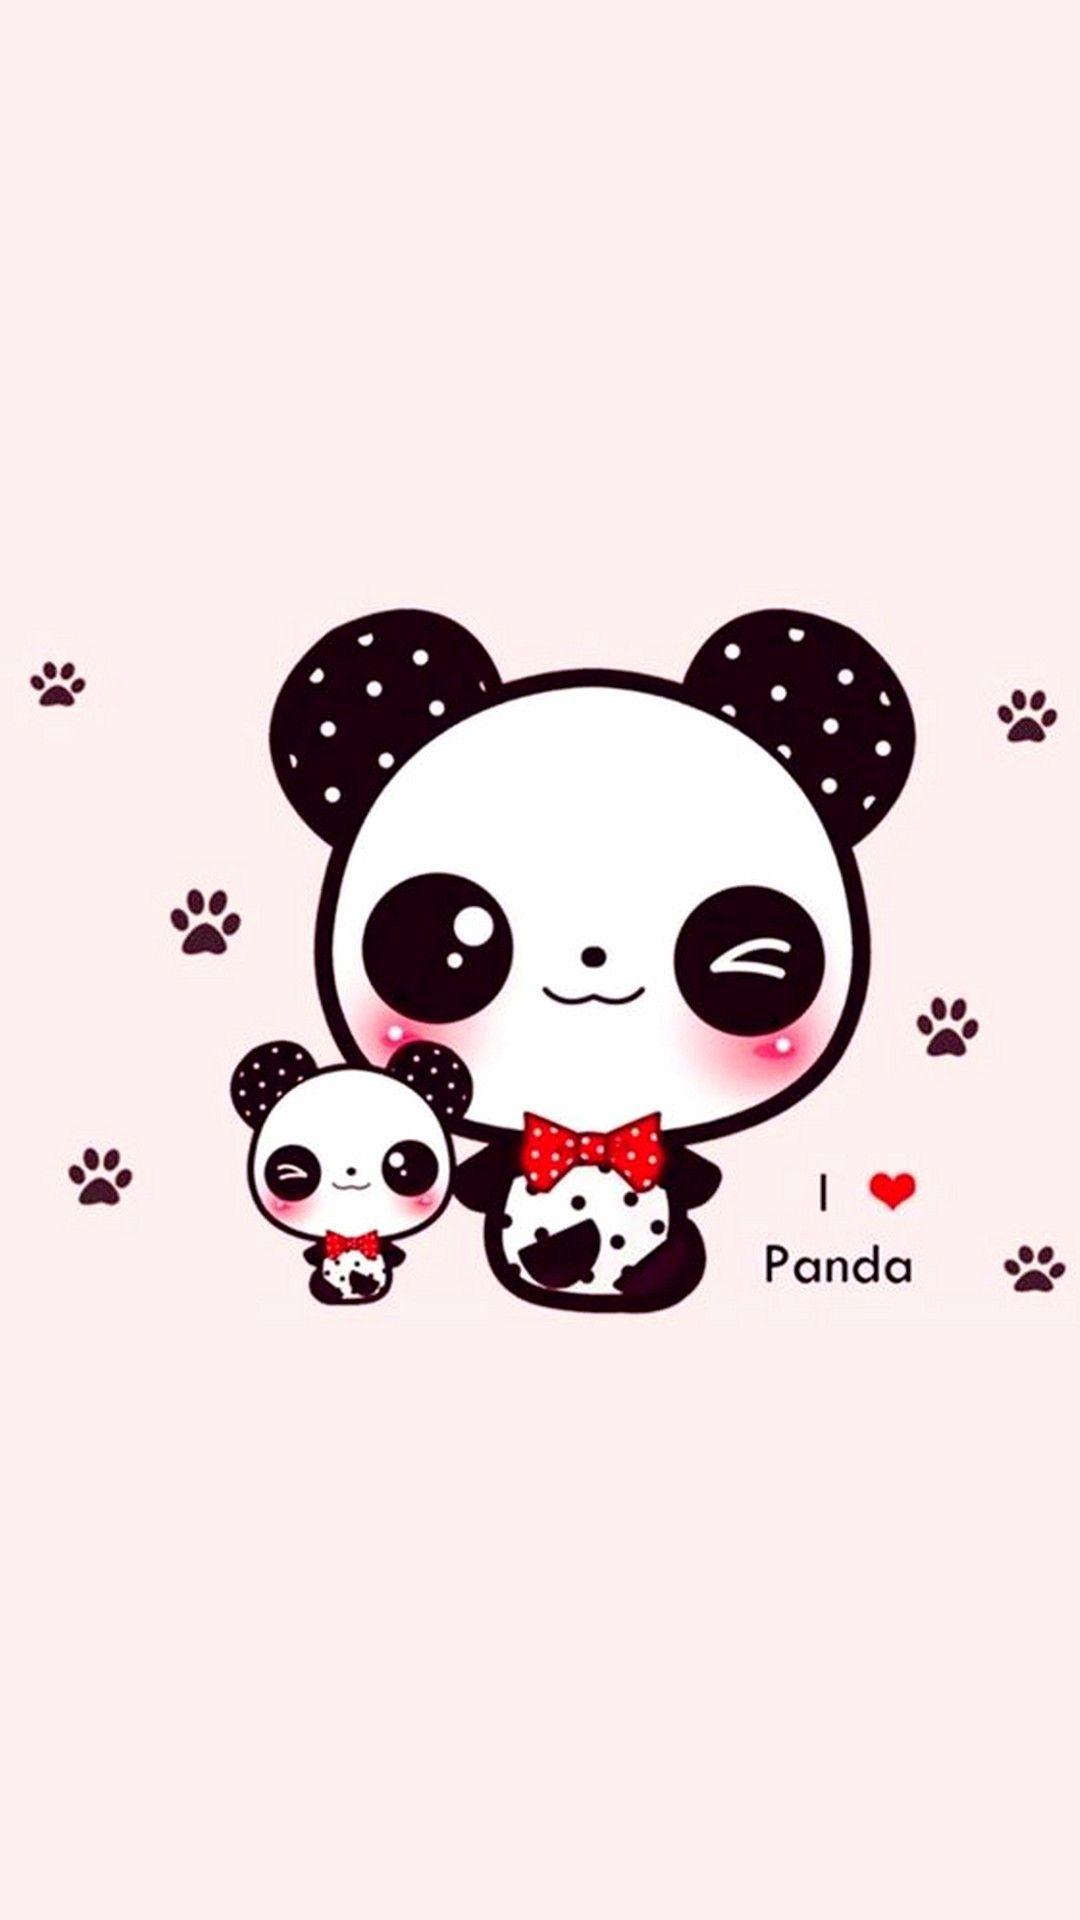 Cute Panda Couple Wallpaper HD Fresh Cute Panda Wallpaper for iPhone